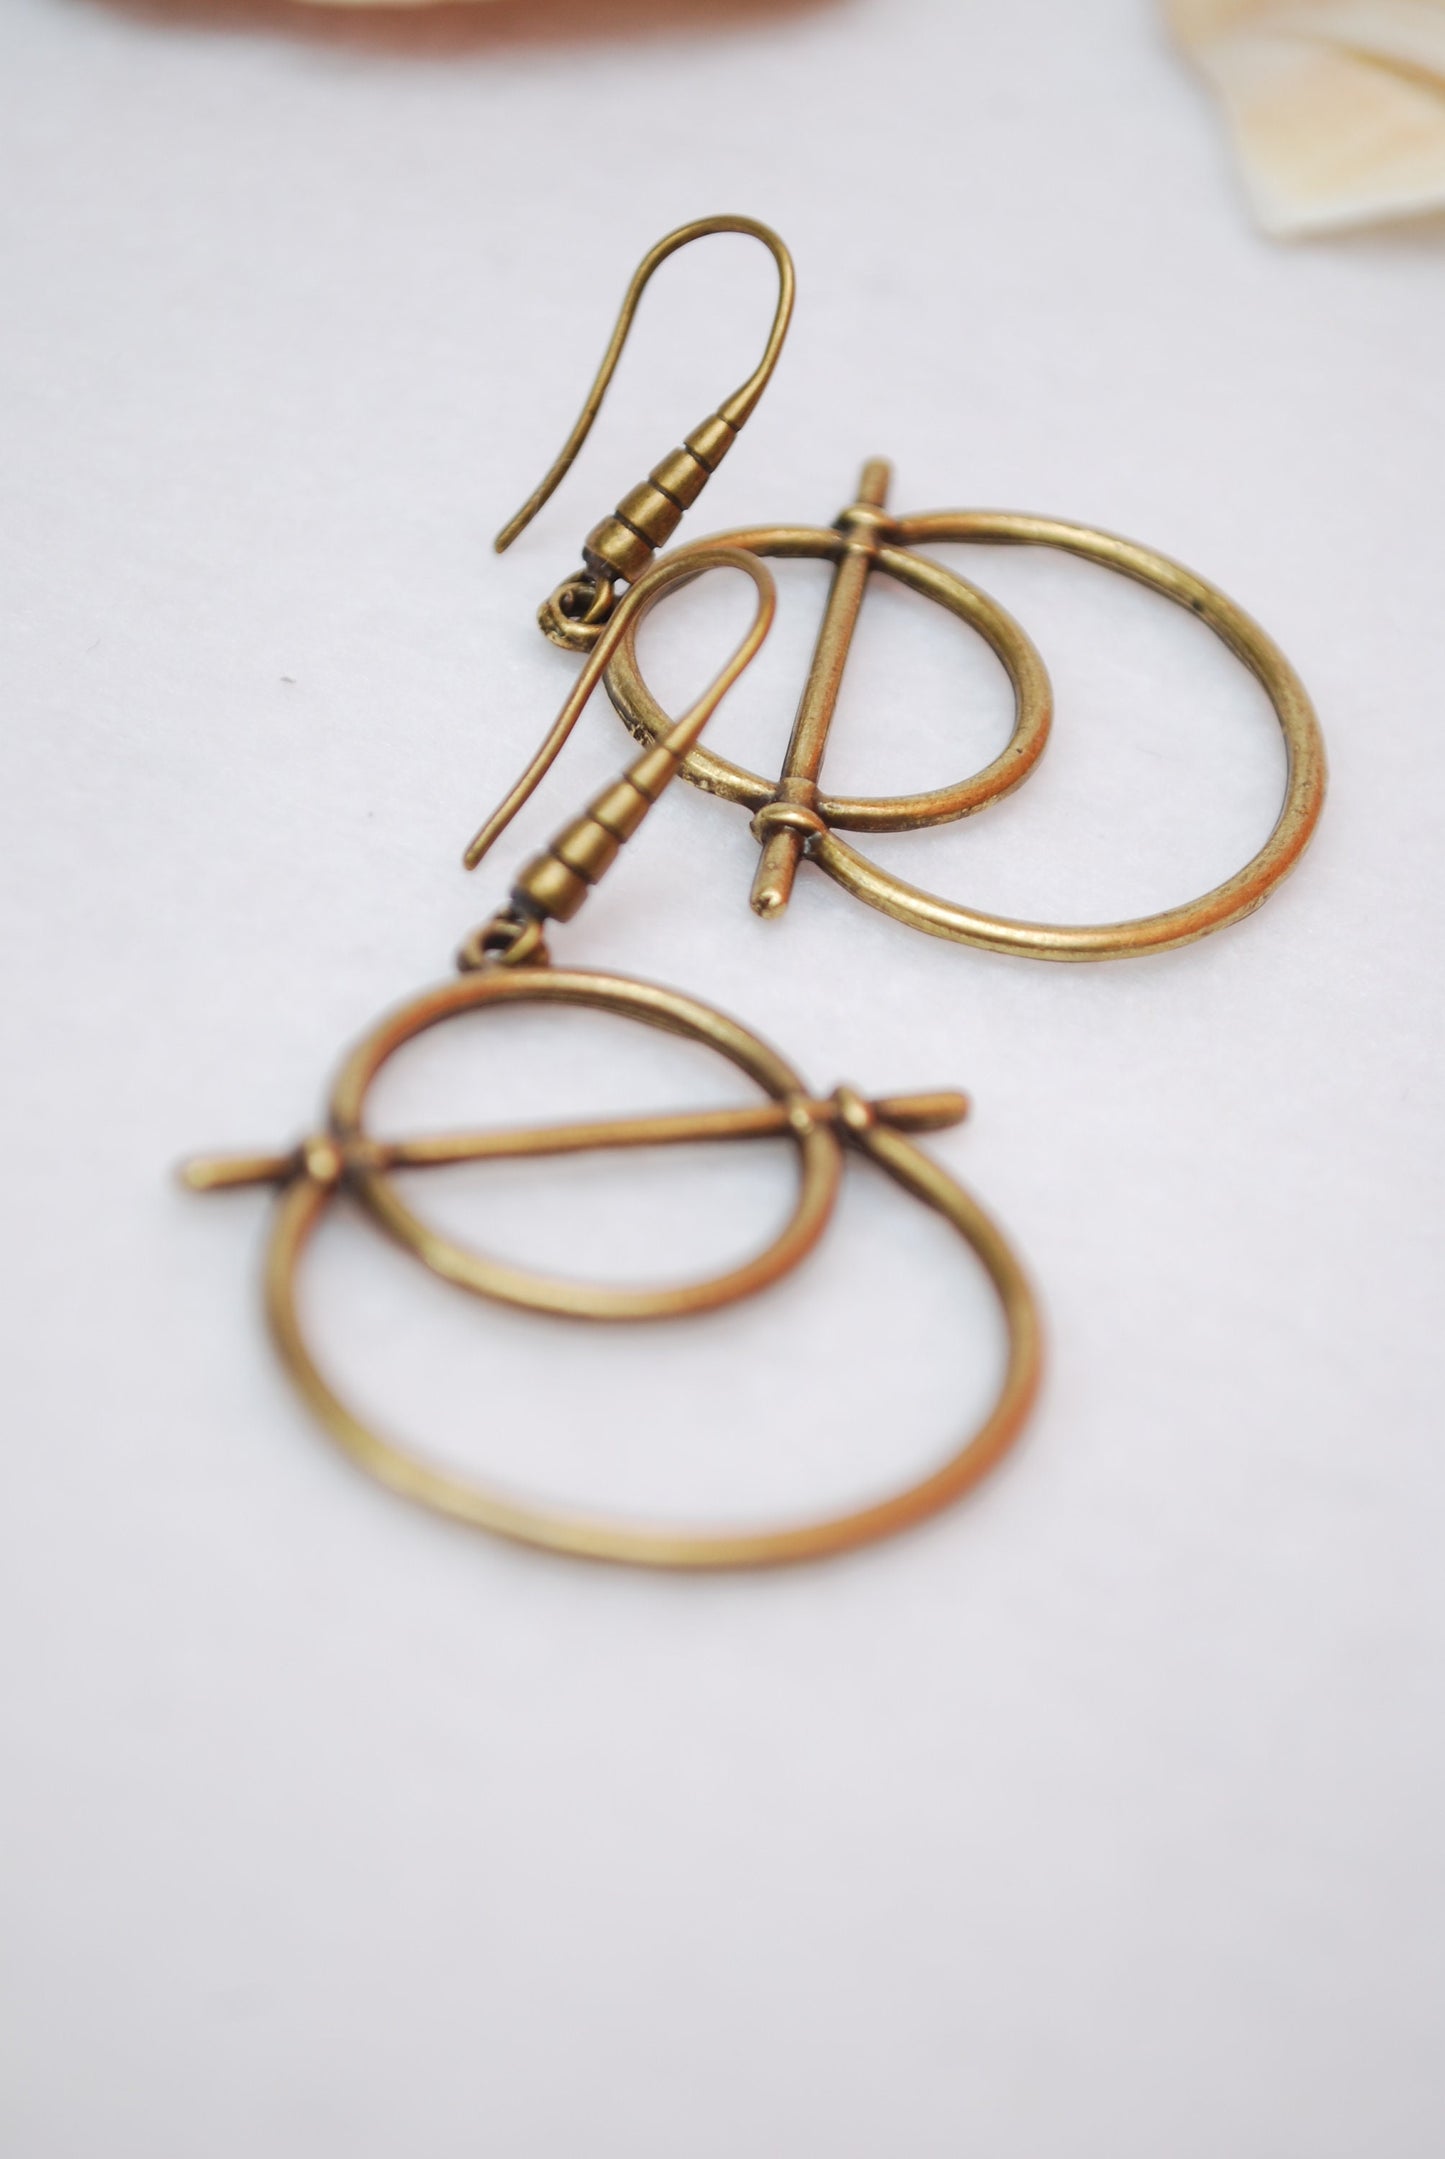 Abstract shape earrings, Bronze plated geometric earrings, summer lightweight drop earrings 5cm - 2"